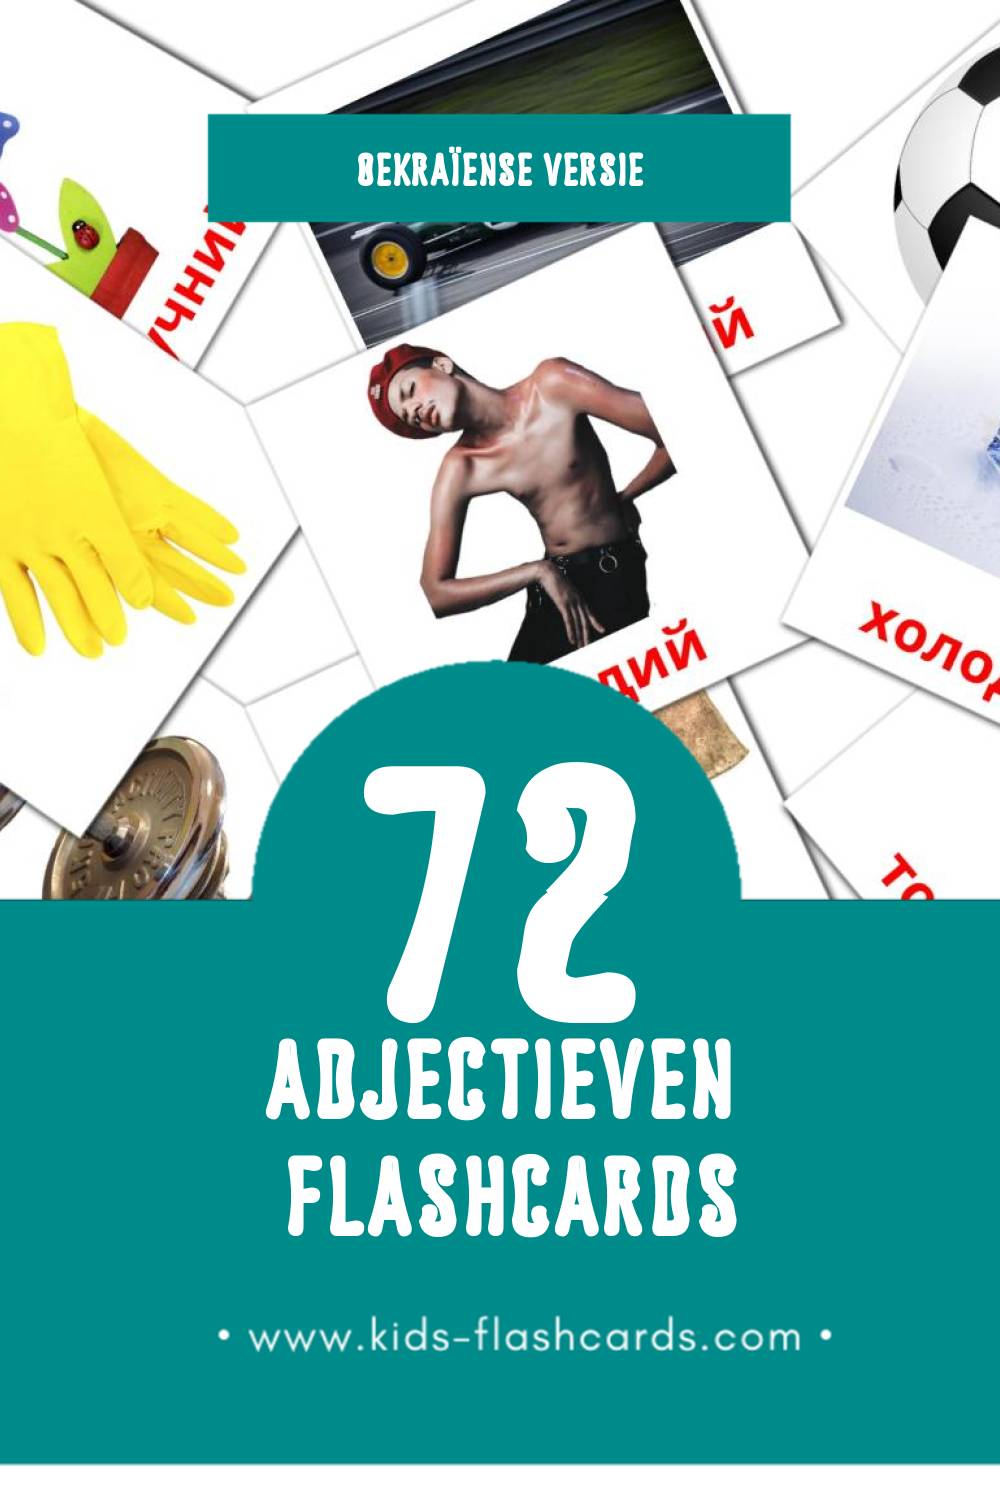 Visuele прикметники Flashcards voor Kleuters (72 kaarten in het Oekraïens)